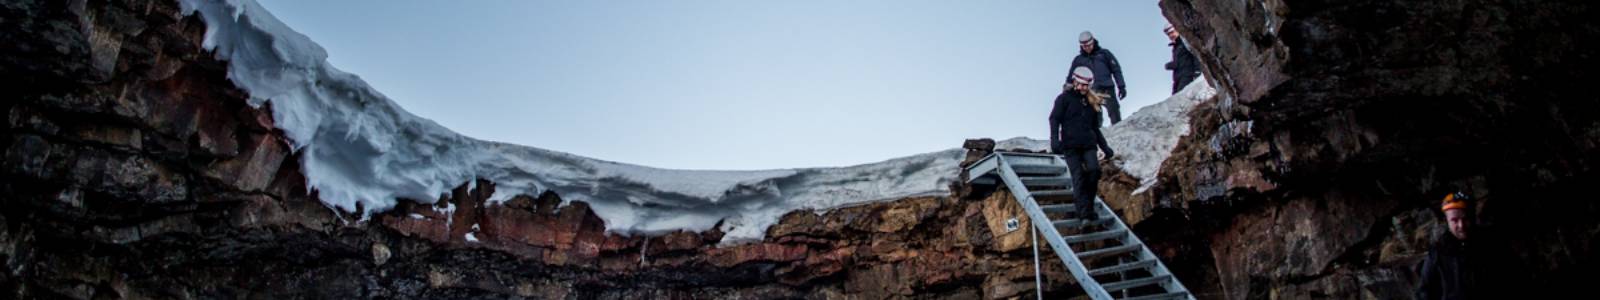 De Lofthellir ijsgrot in IJsland bezoeken